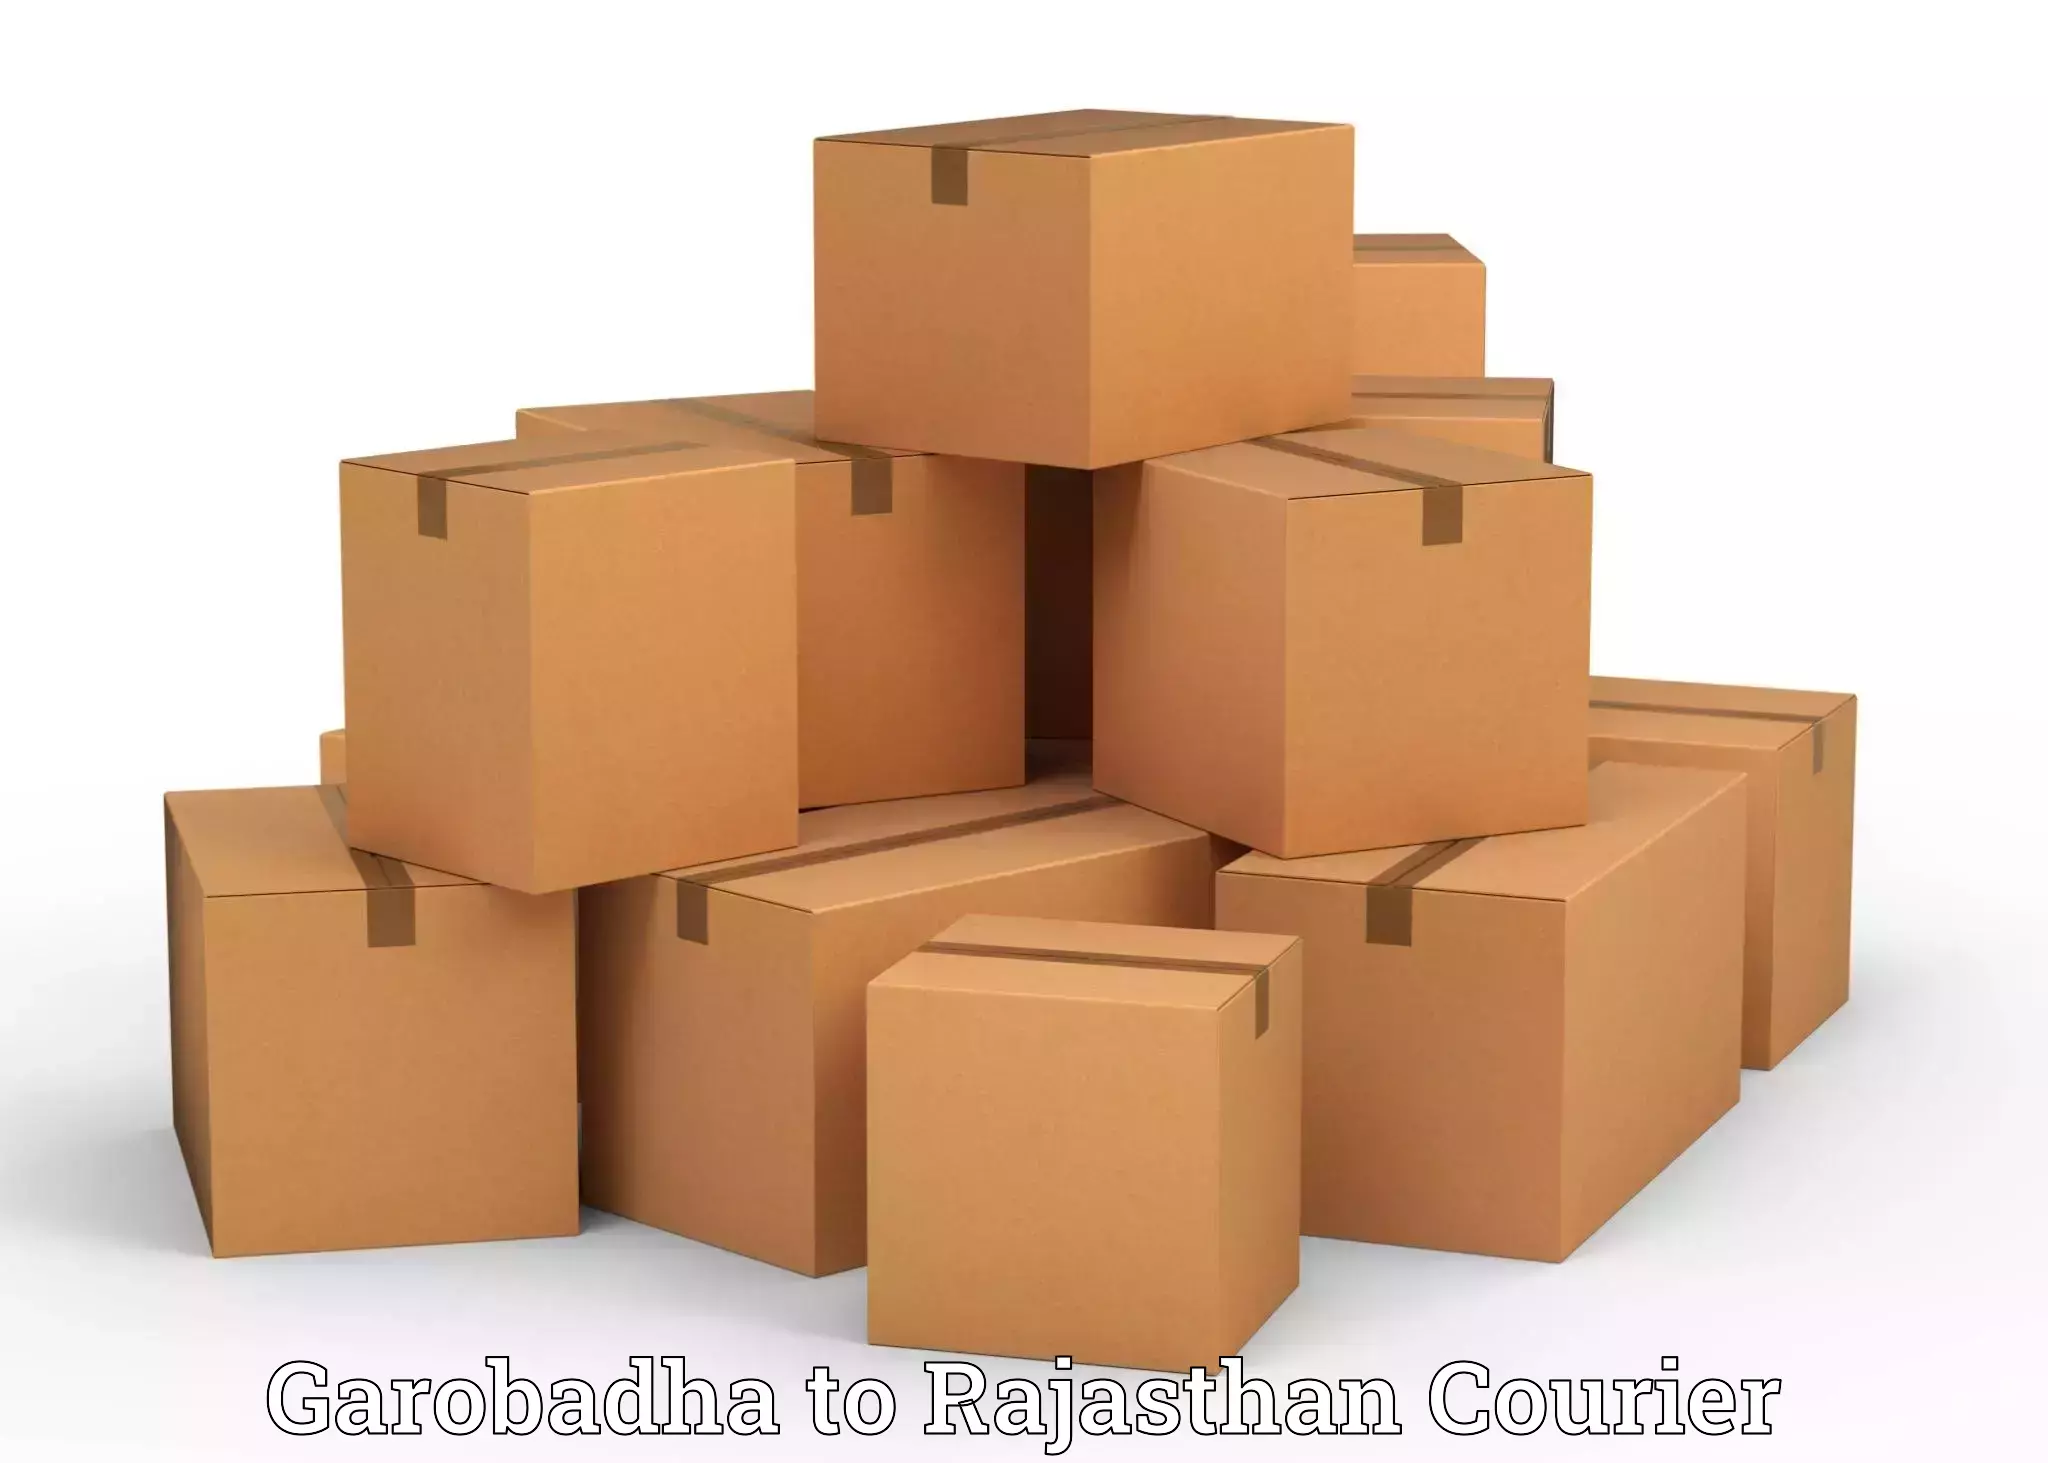 Furniture relocation experts Garobadha to Rajasthan